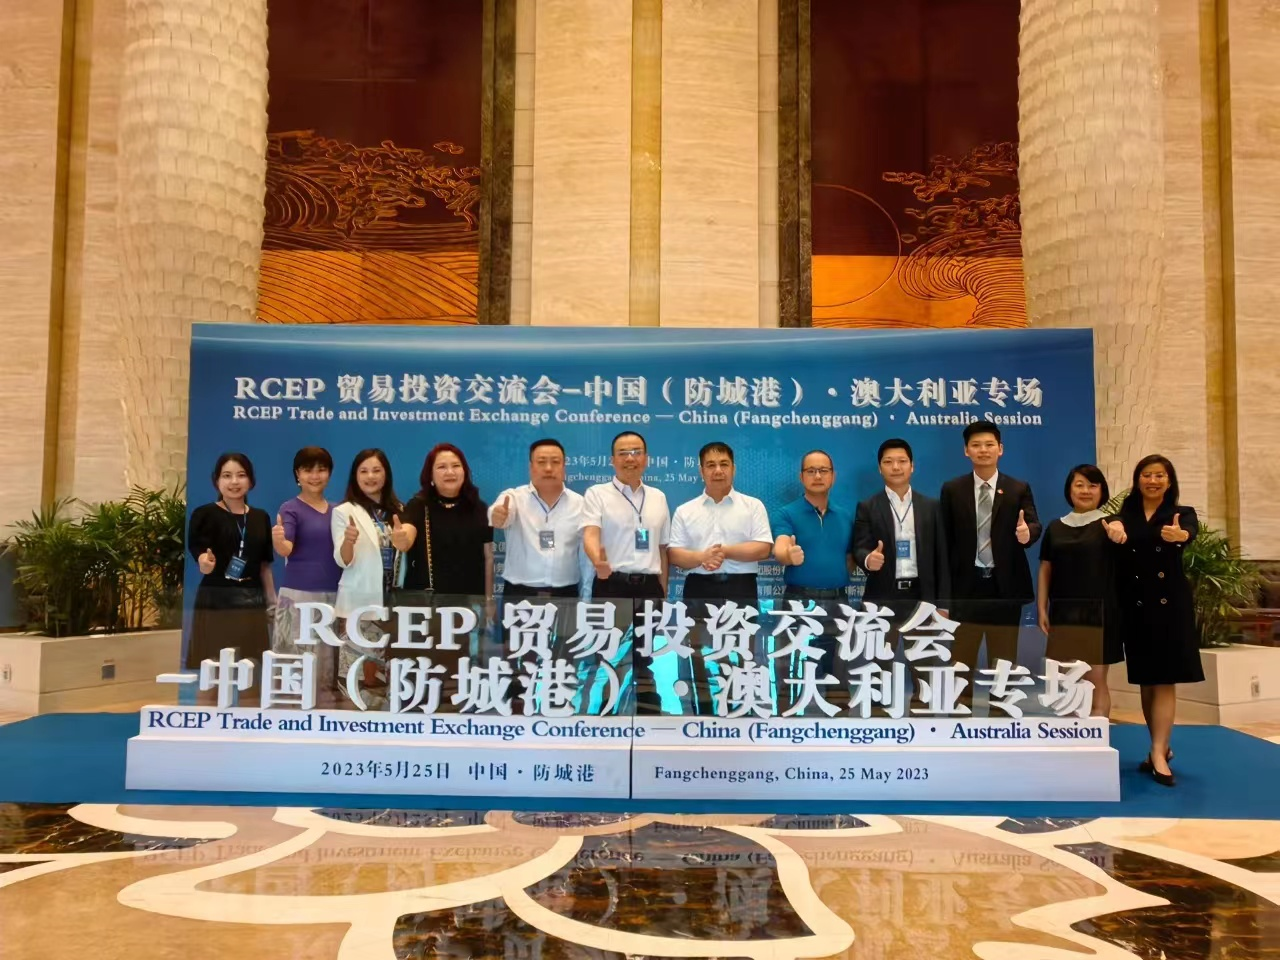 广西侨商会代表出席RCEP贸易投资交流会—中国（防城港）·澳大利亚专场活动